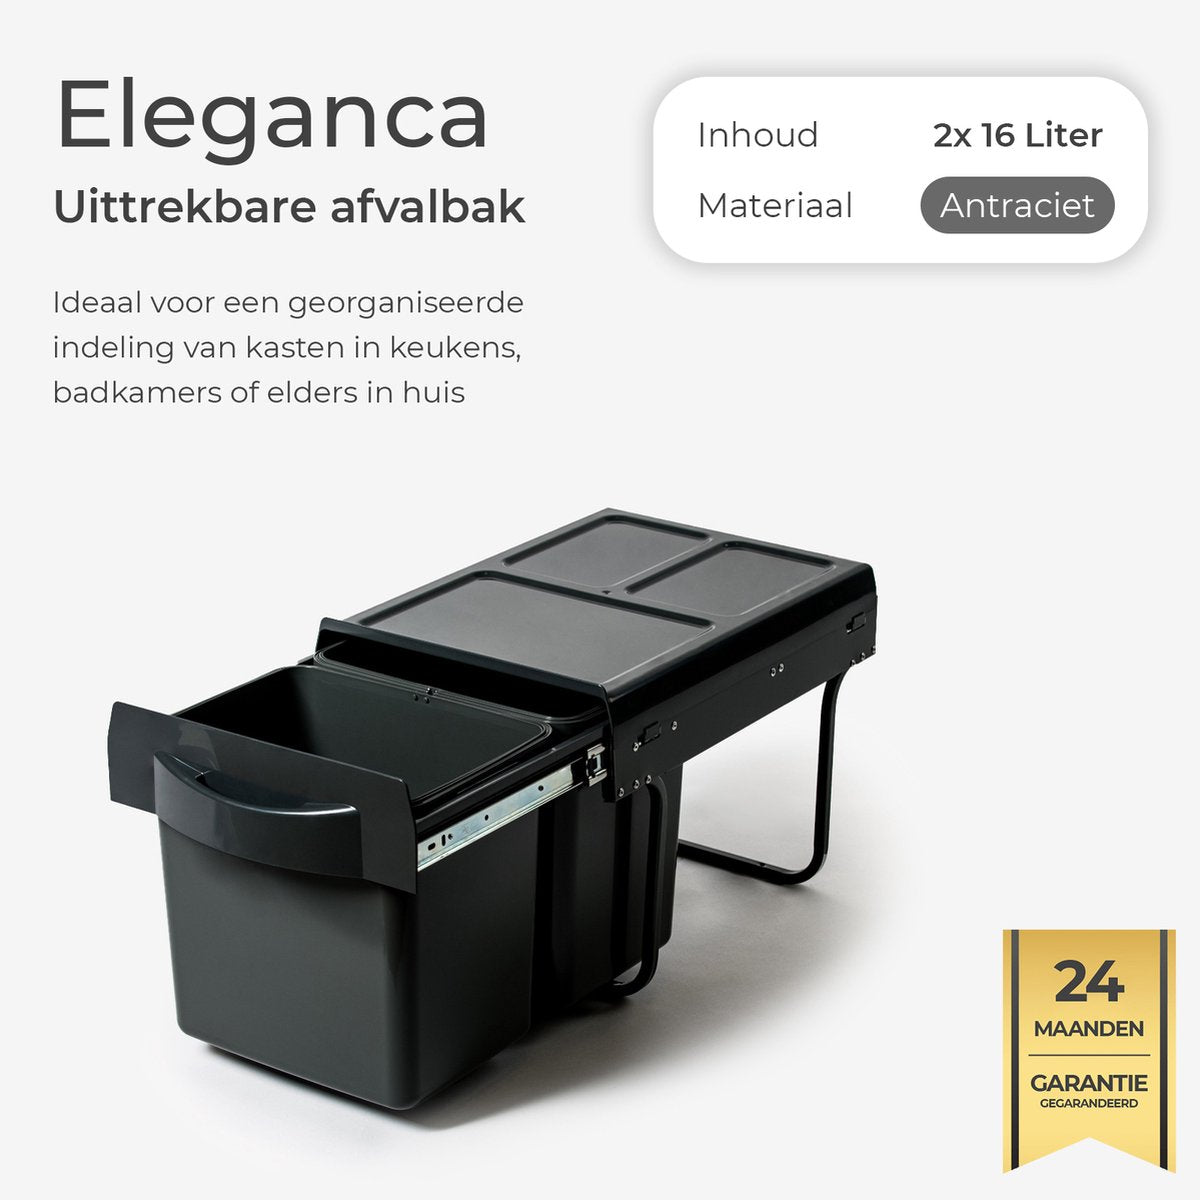 Eleganca Built-in waste bin 2x16 liters